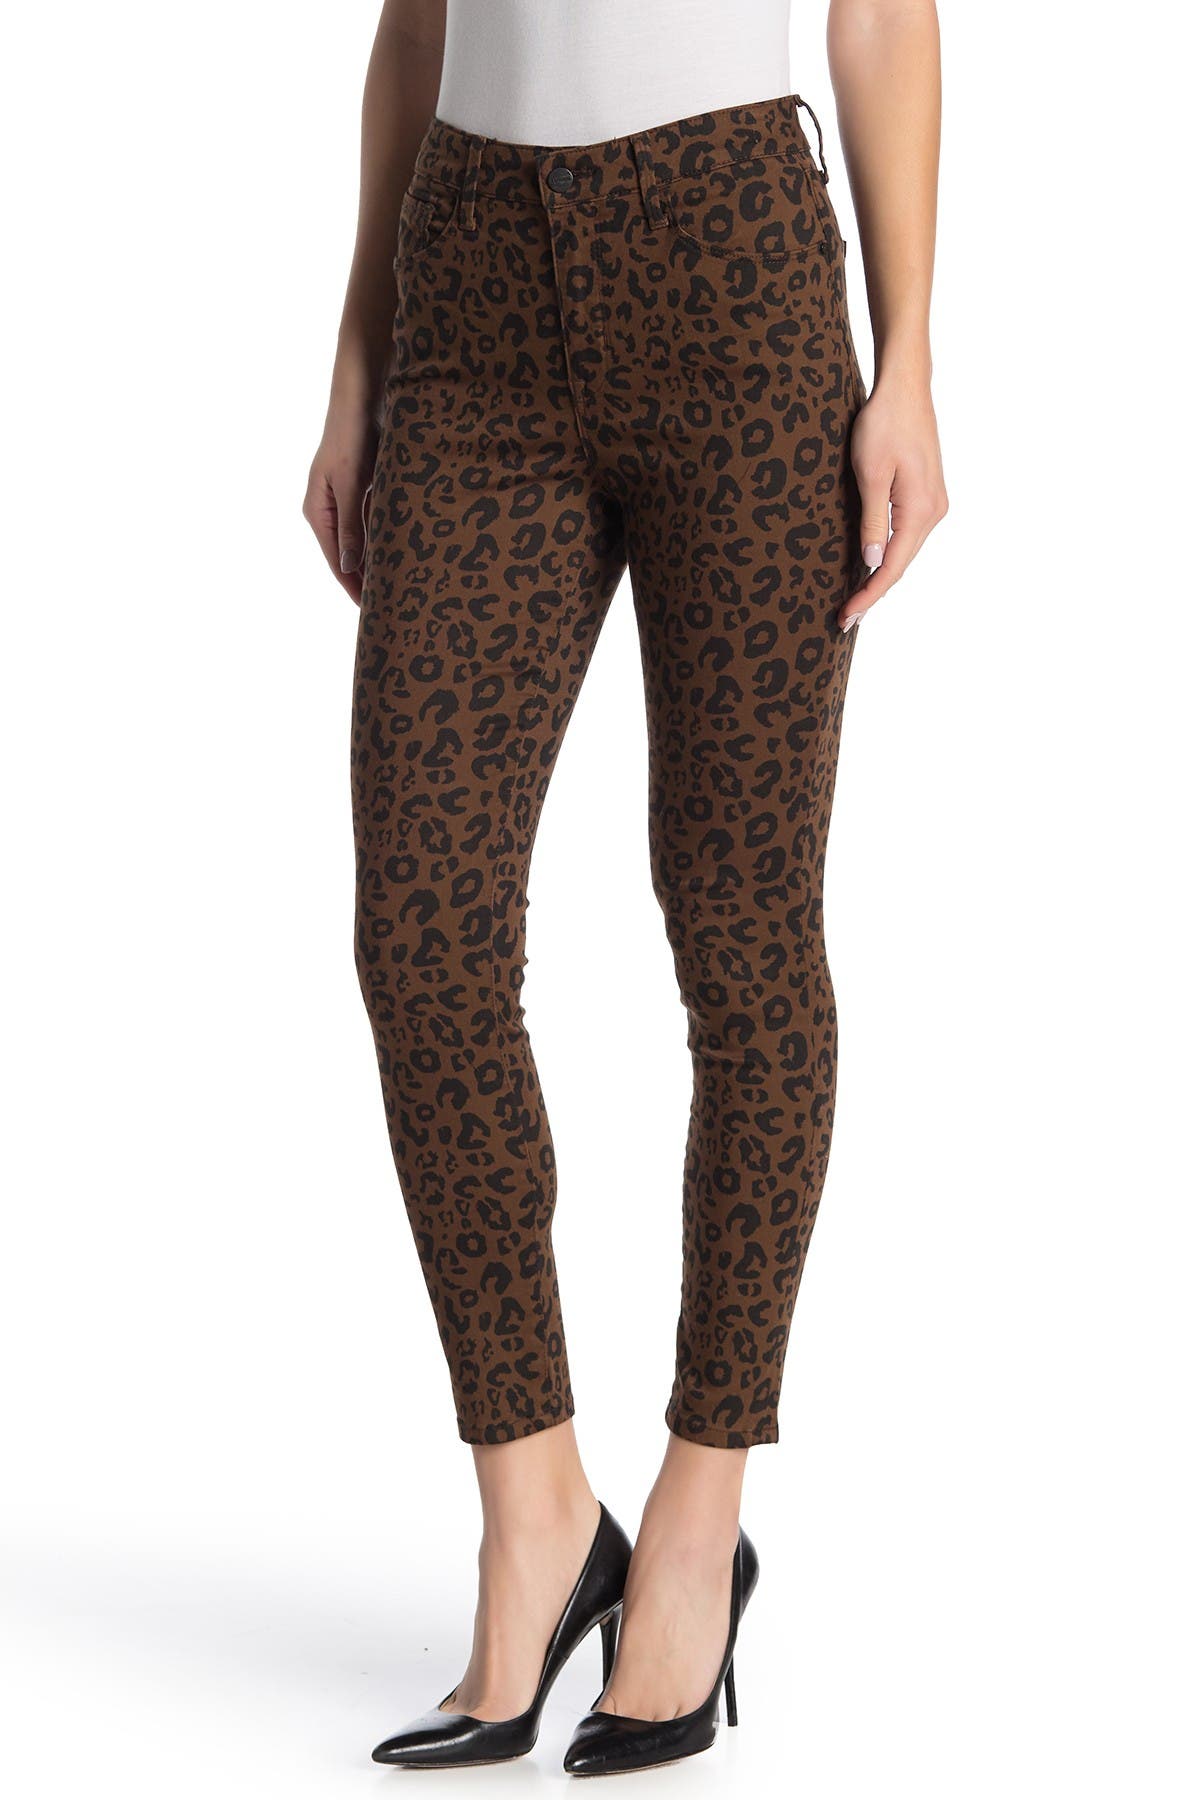 next leopard print jeans